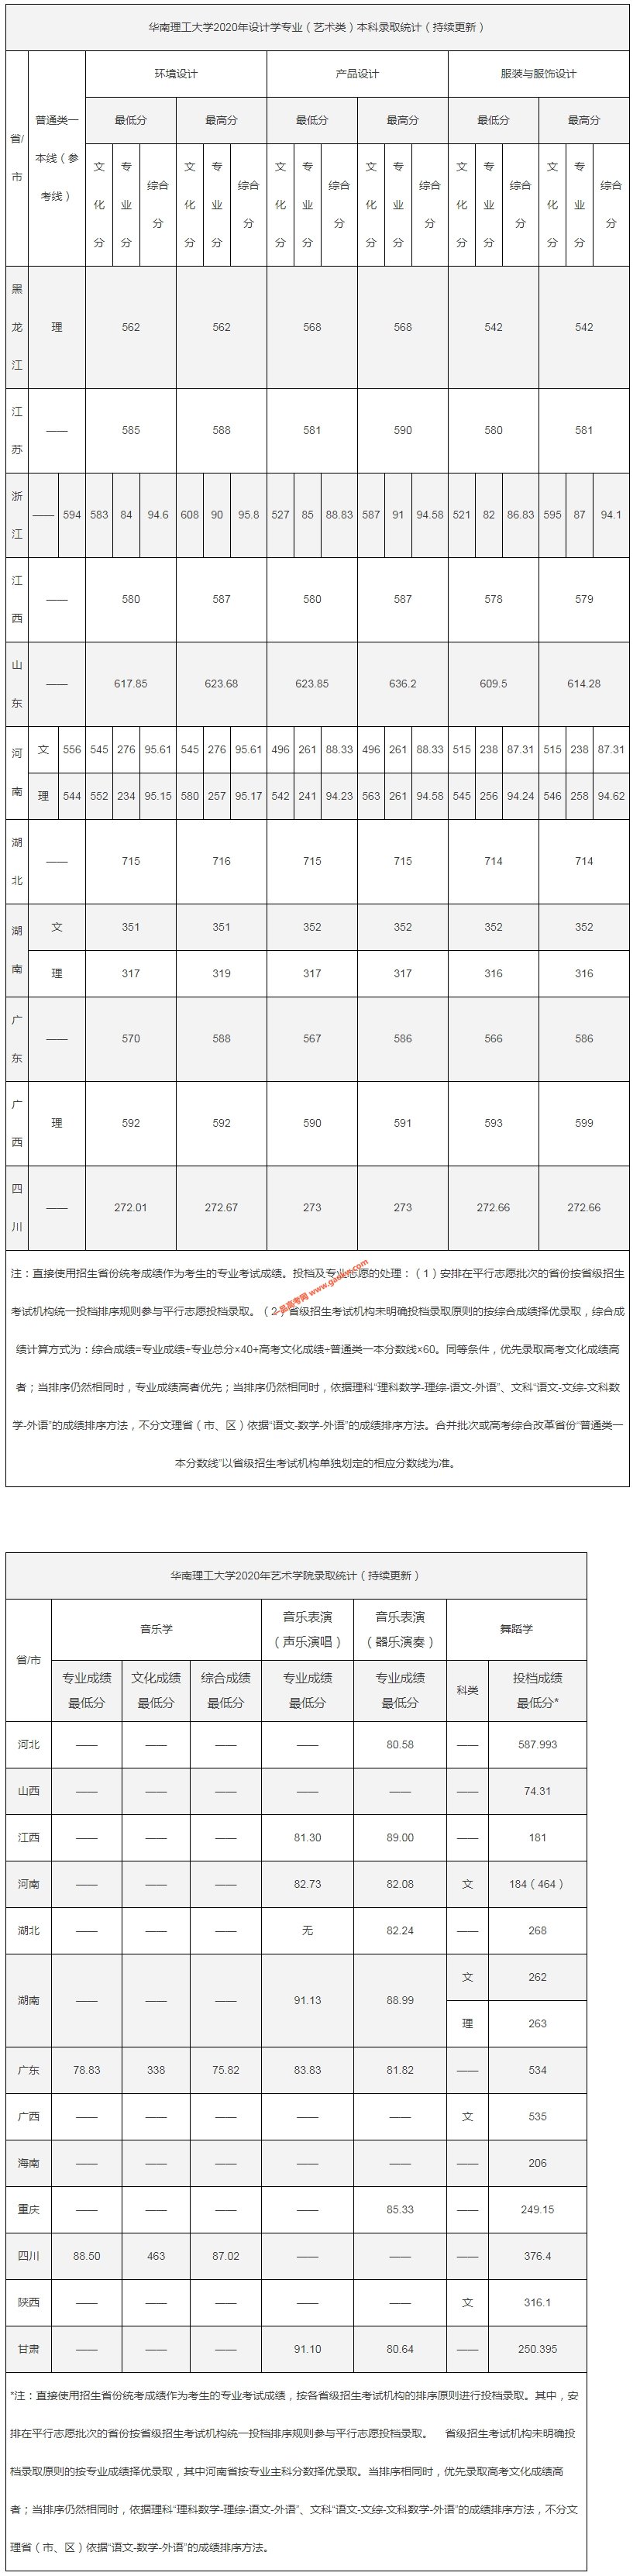 华南理工大学2020年艺术类高考录取分数统计